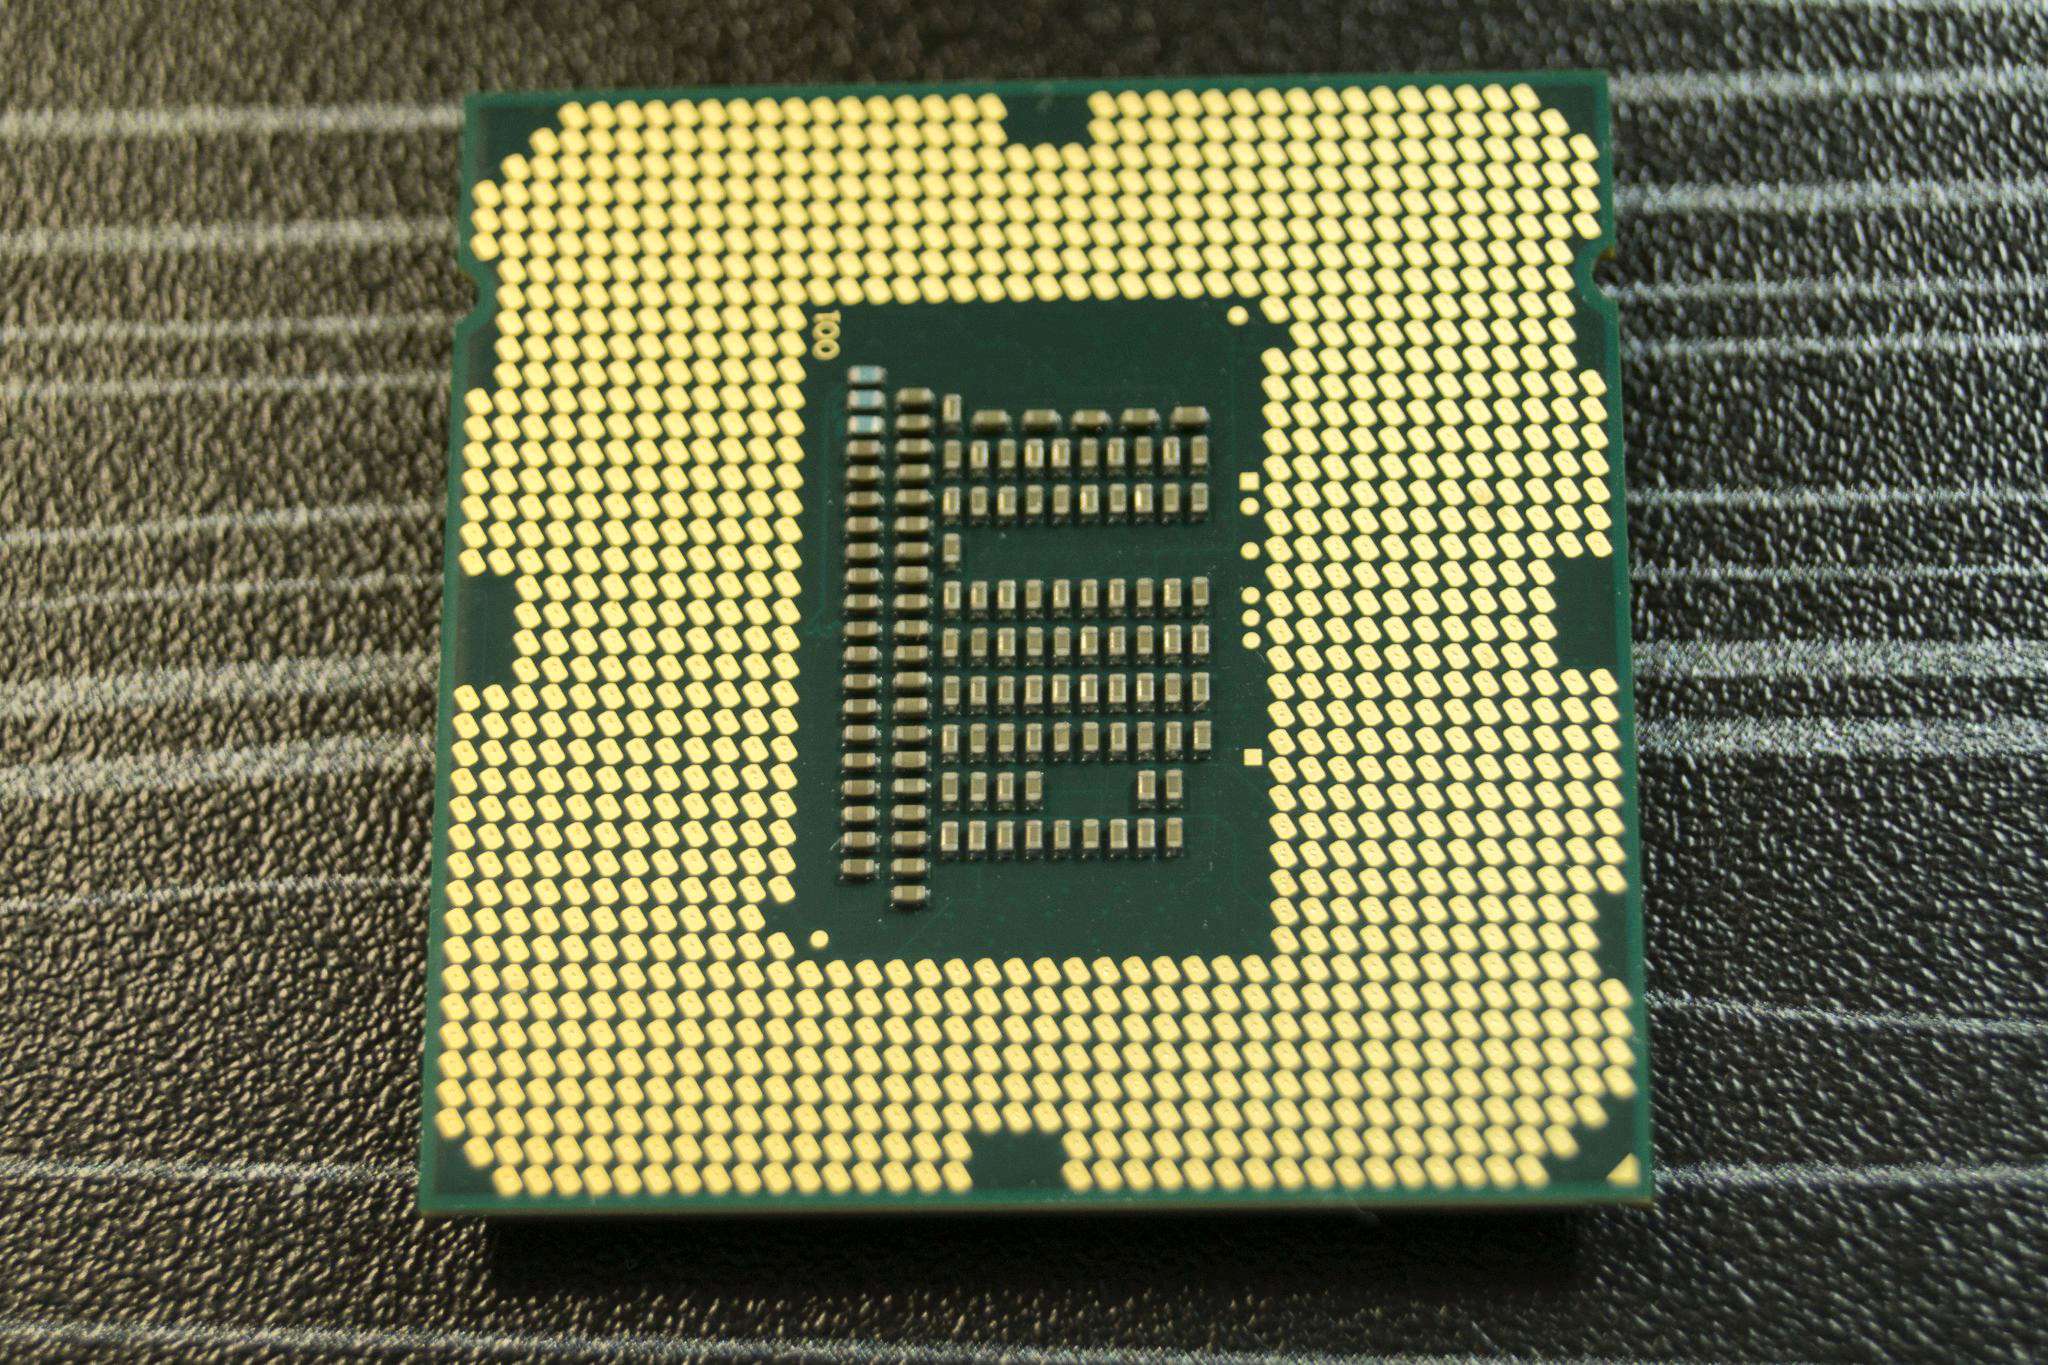 Intel core i3 какой сокет. Lga1155 Core i3. Core i3 3220 сокет. Сокет LGA 1155 (Socket h2). Intel Core i3-3220 CPU 3.30GHZ.